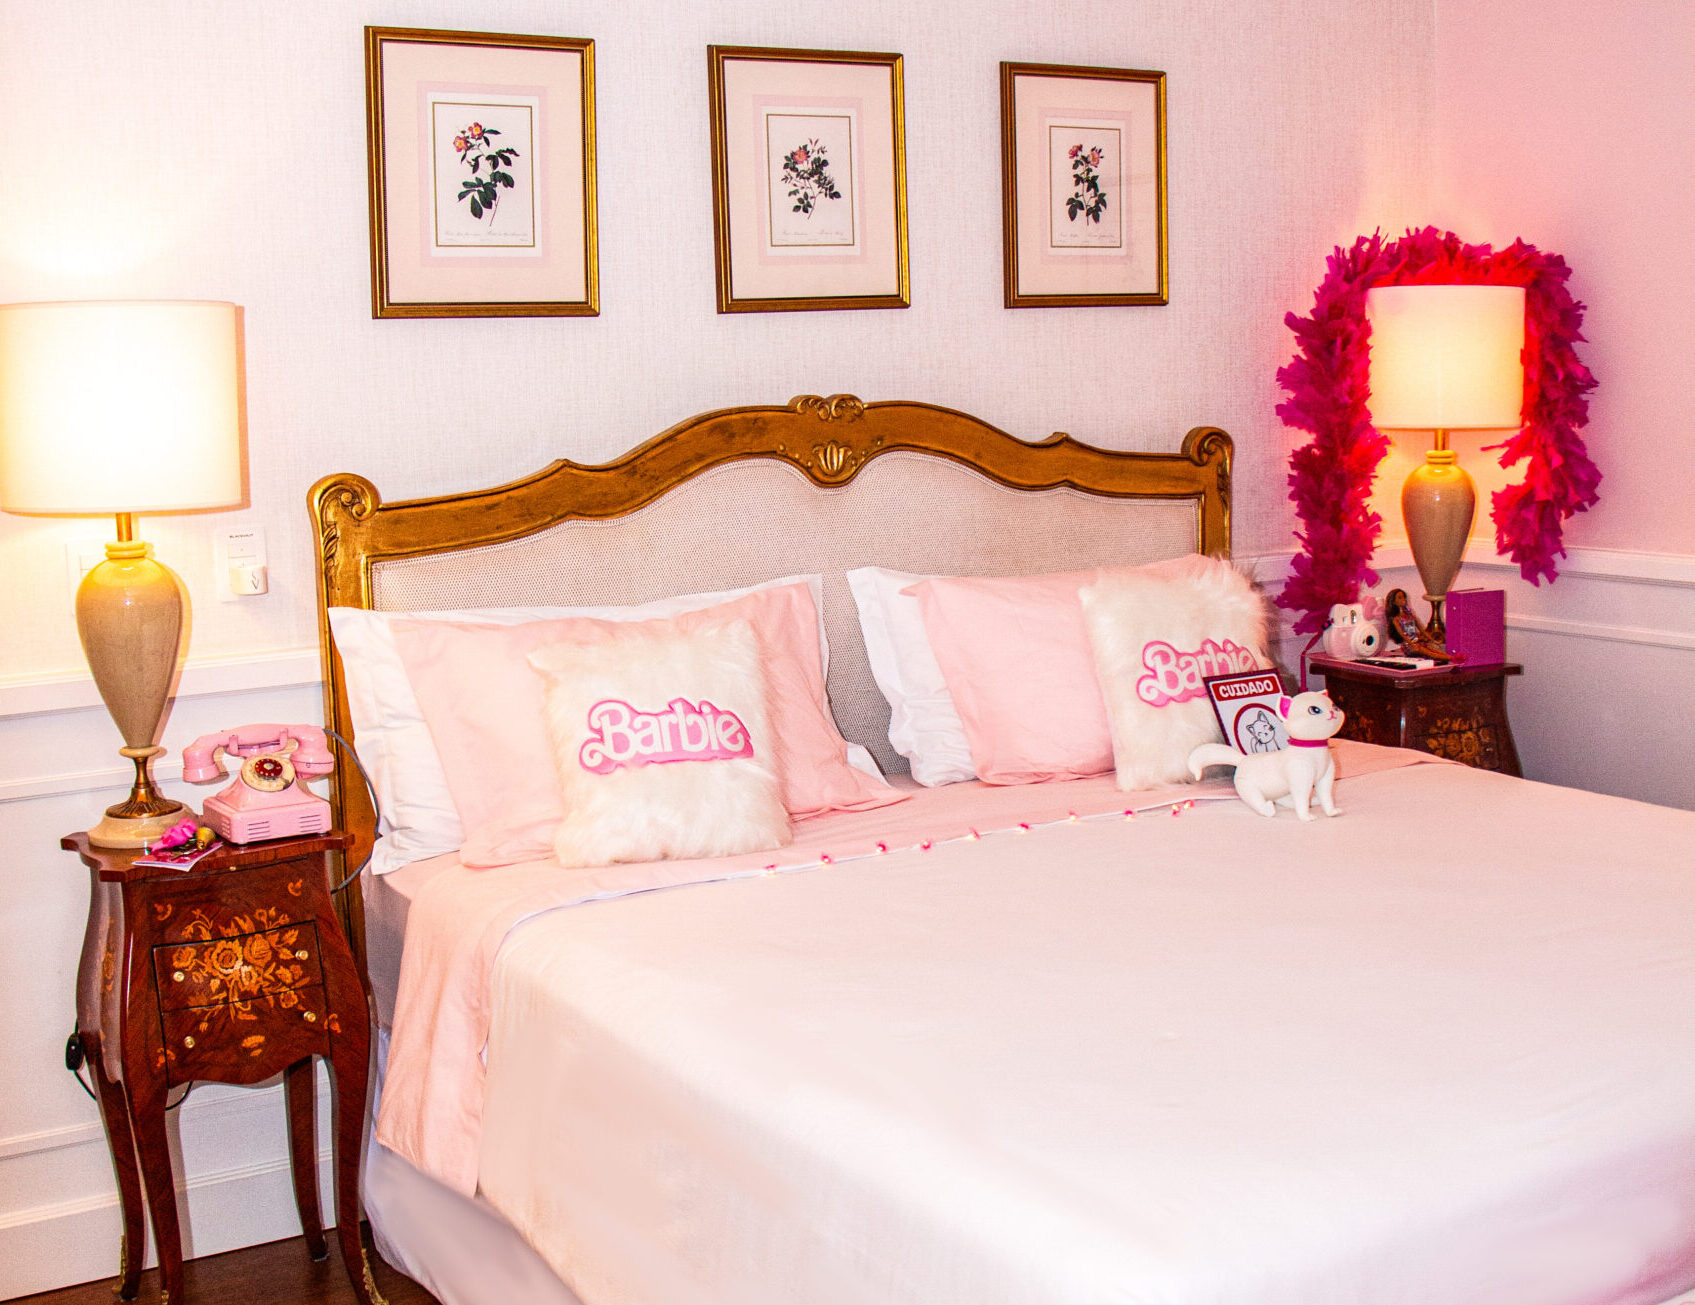 IMG 7622 scaled e1689883386710 Hotel de luxo de Santa Catarina lança suíte cor-de-rosa inspirado no filme da Barbie